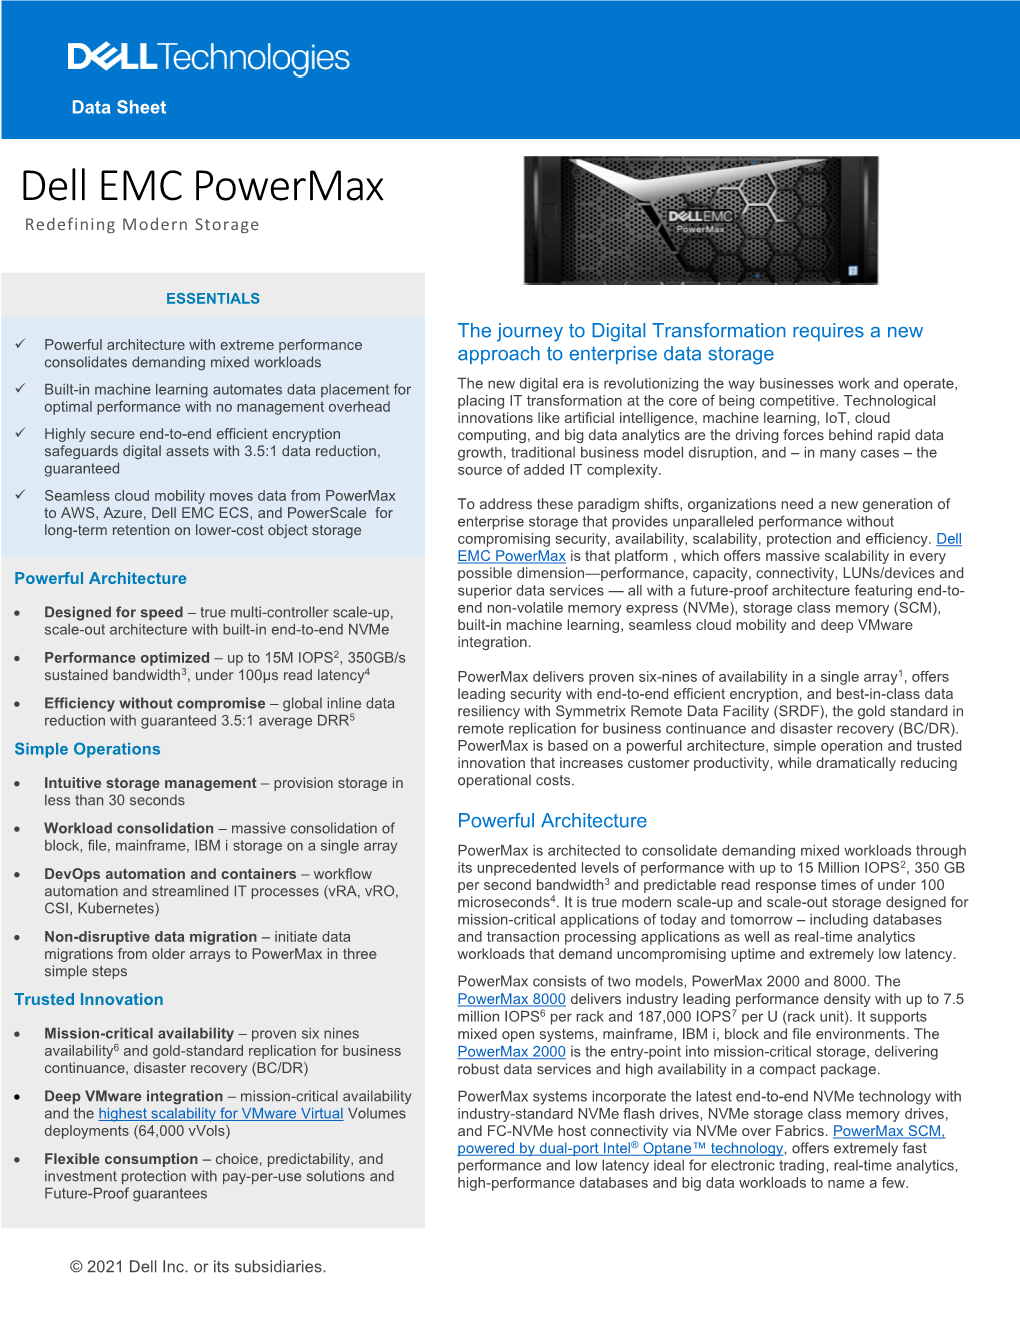 Dell EMC Powermax Data Sheet